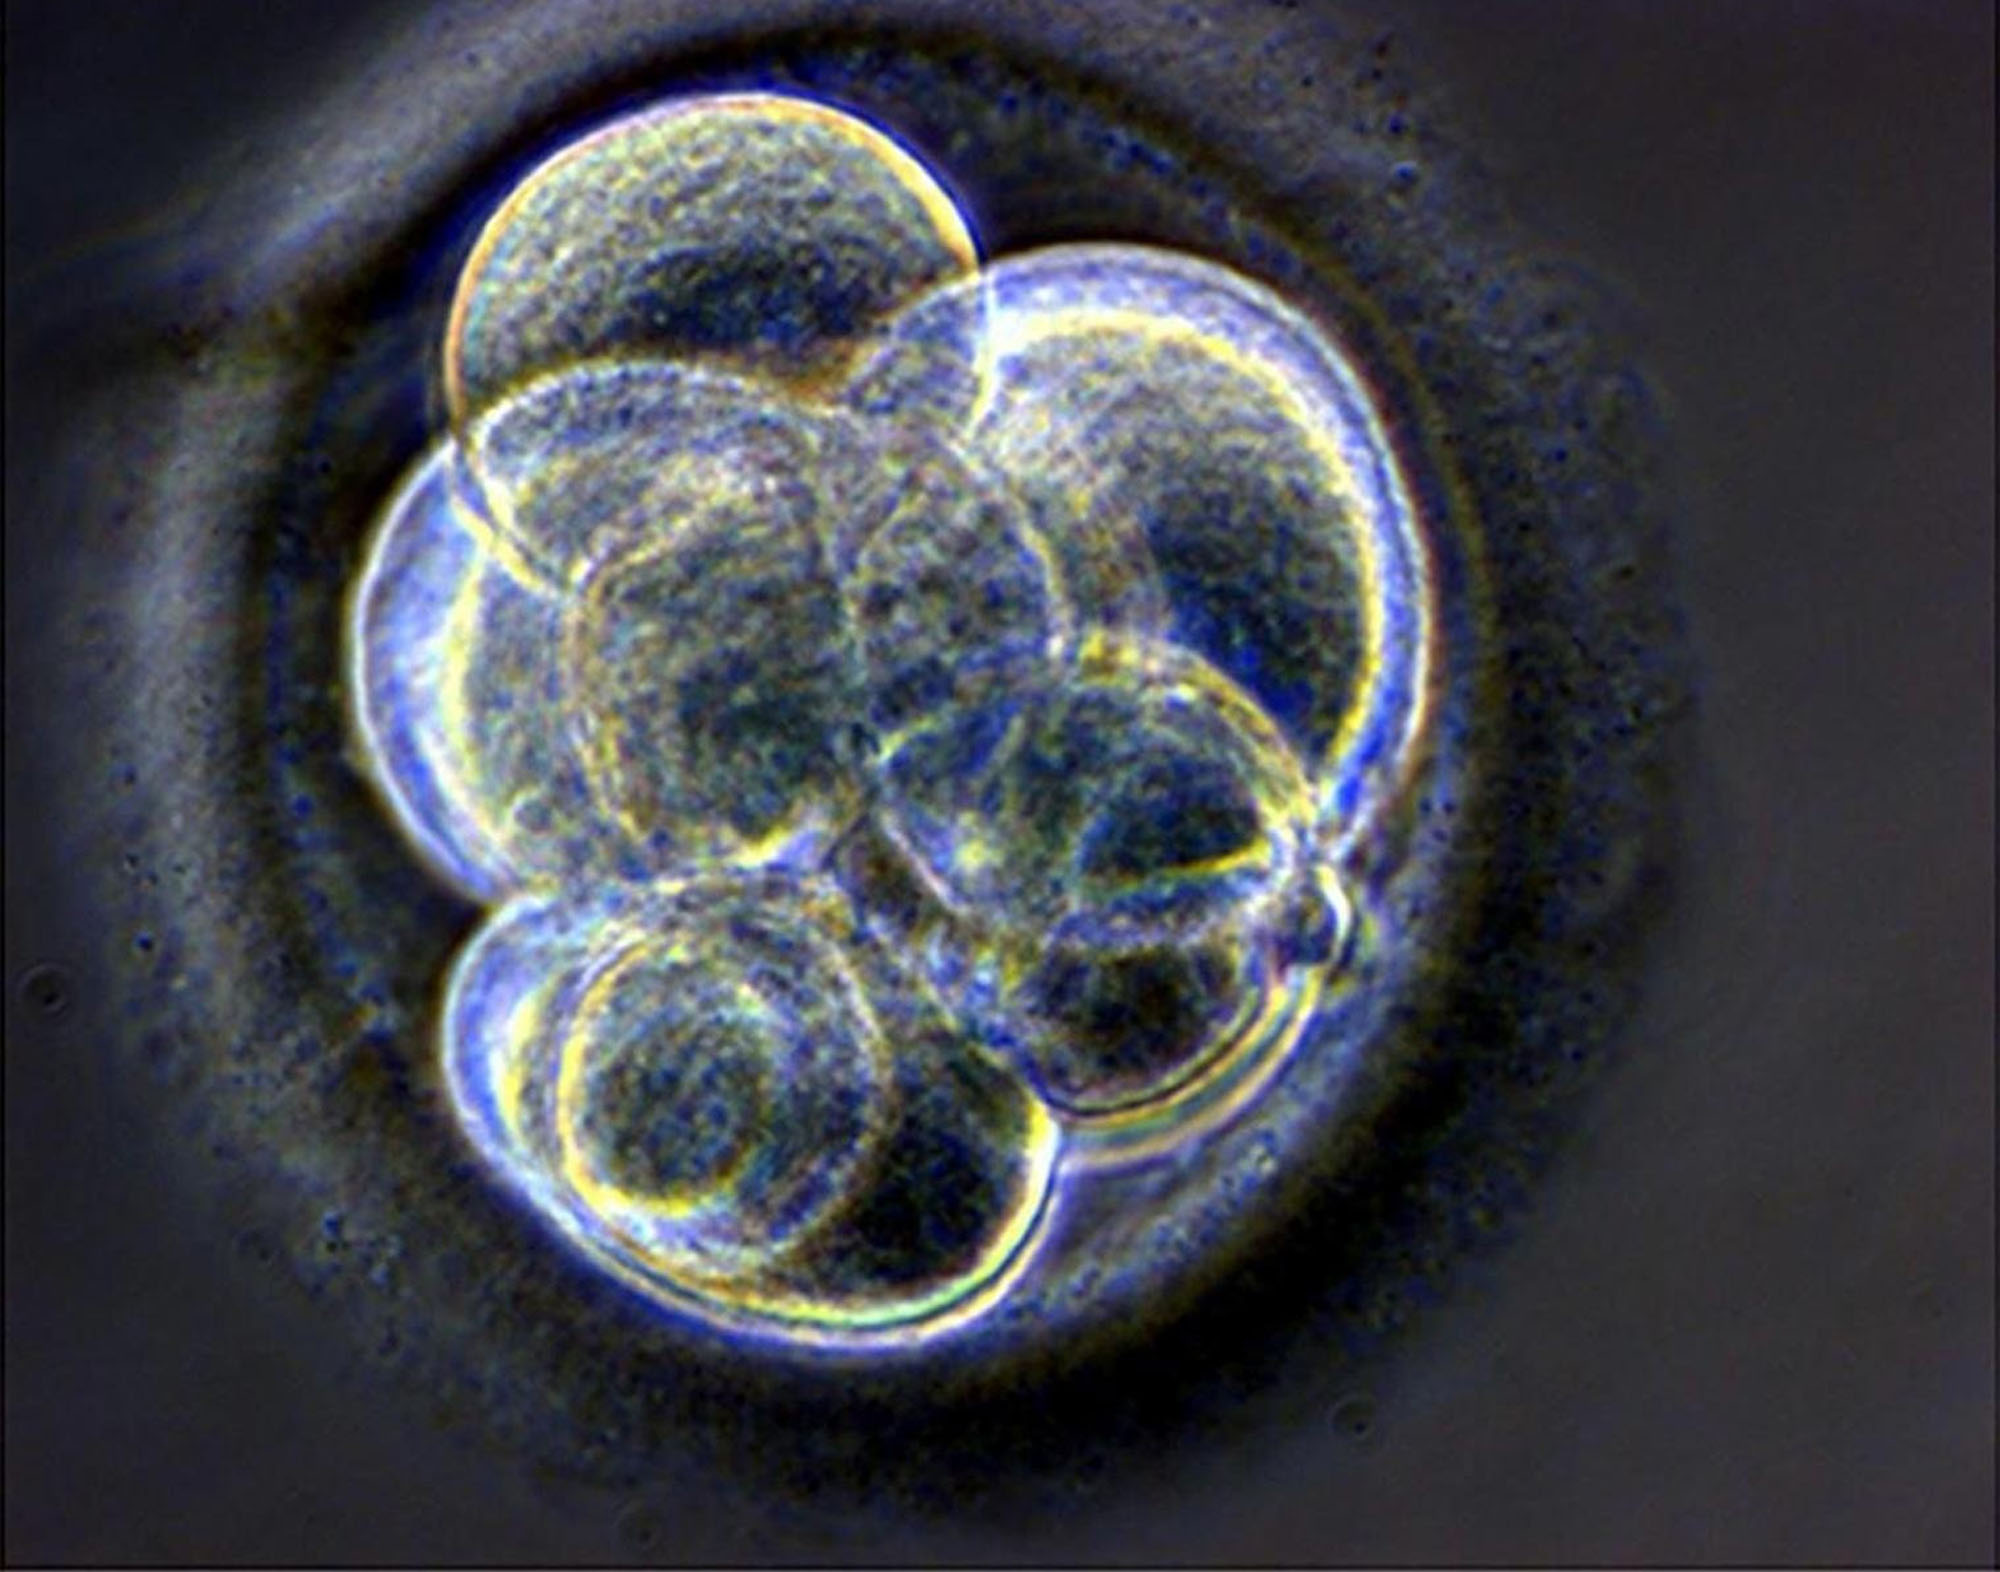 Δεύτερη αμερικανική δοκιμή με εμβρυακά βλαστοκύτταρα, αυτή τη φορά για την τύφλωση